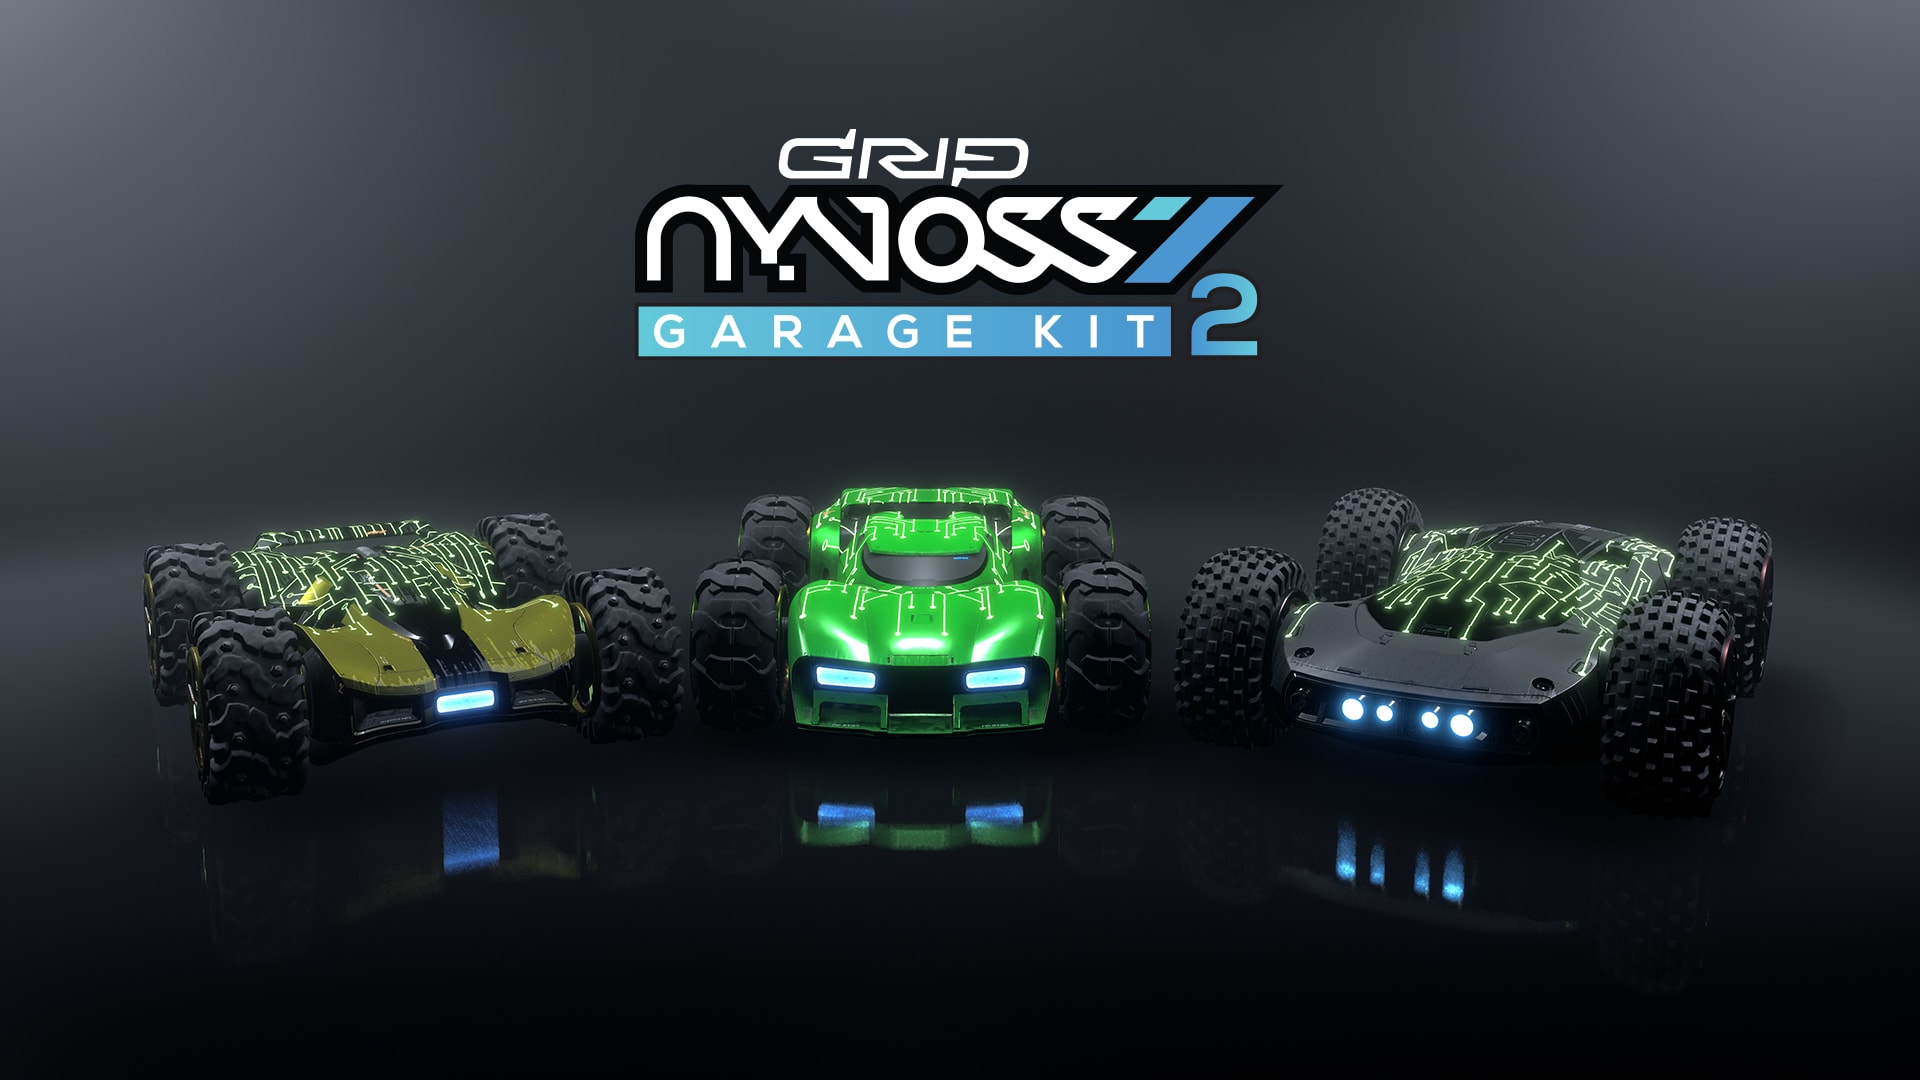 Nyvoss Garage Kit 2